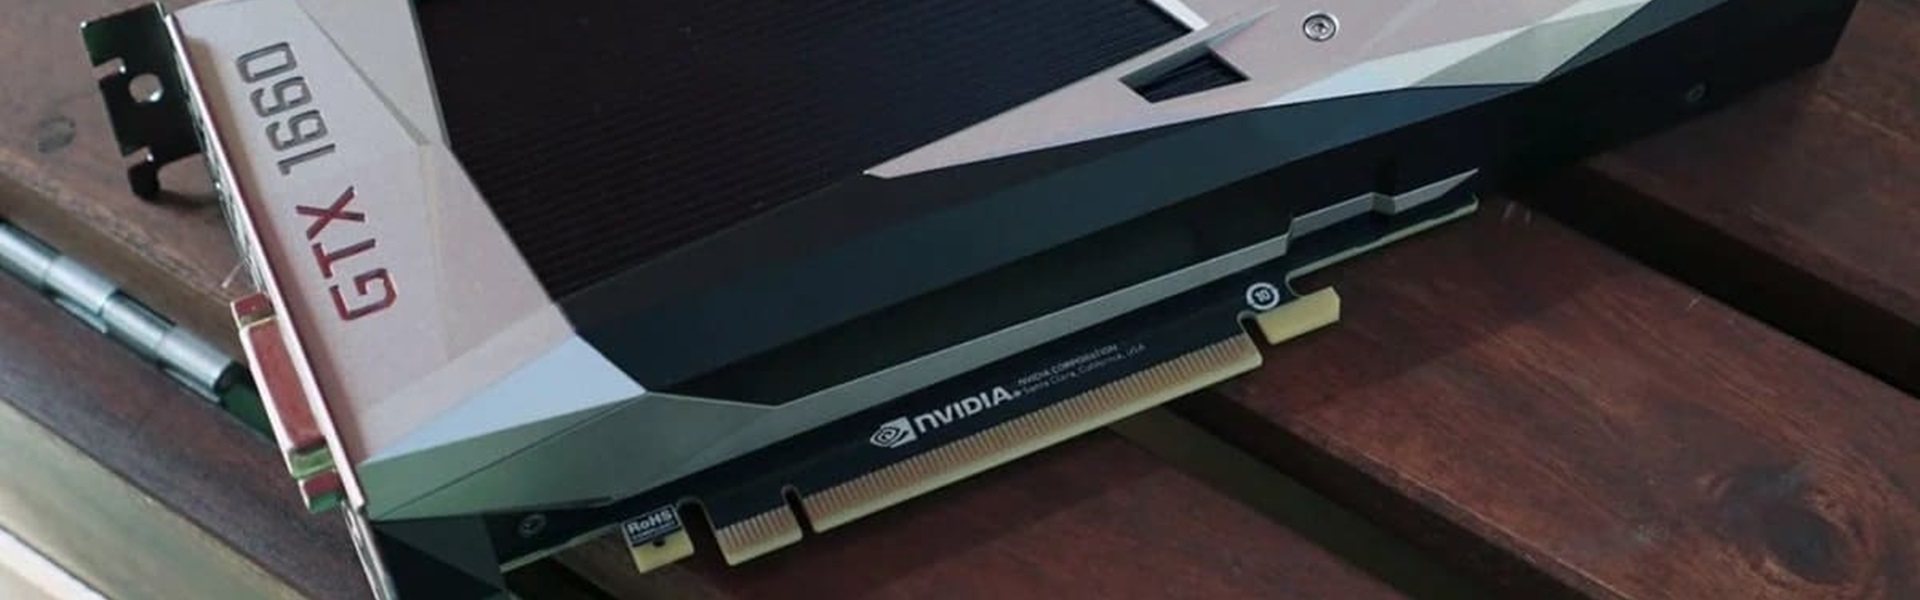 Разгоняем видеокарту GeForce GTX 1660 HYNIX и MICRON для майнинга